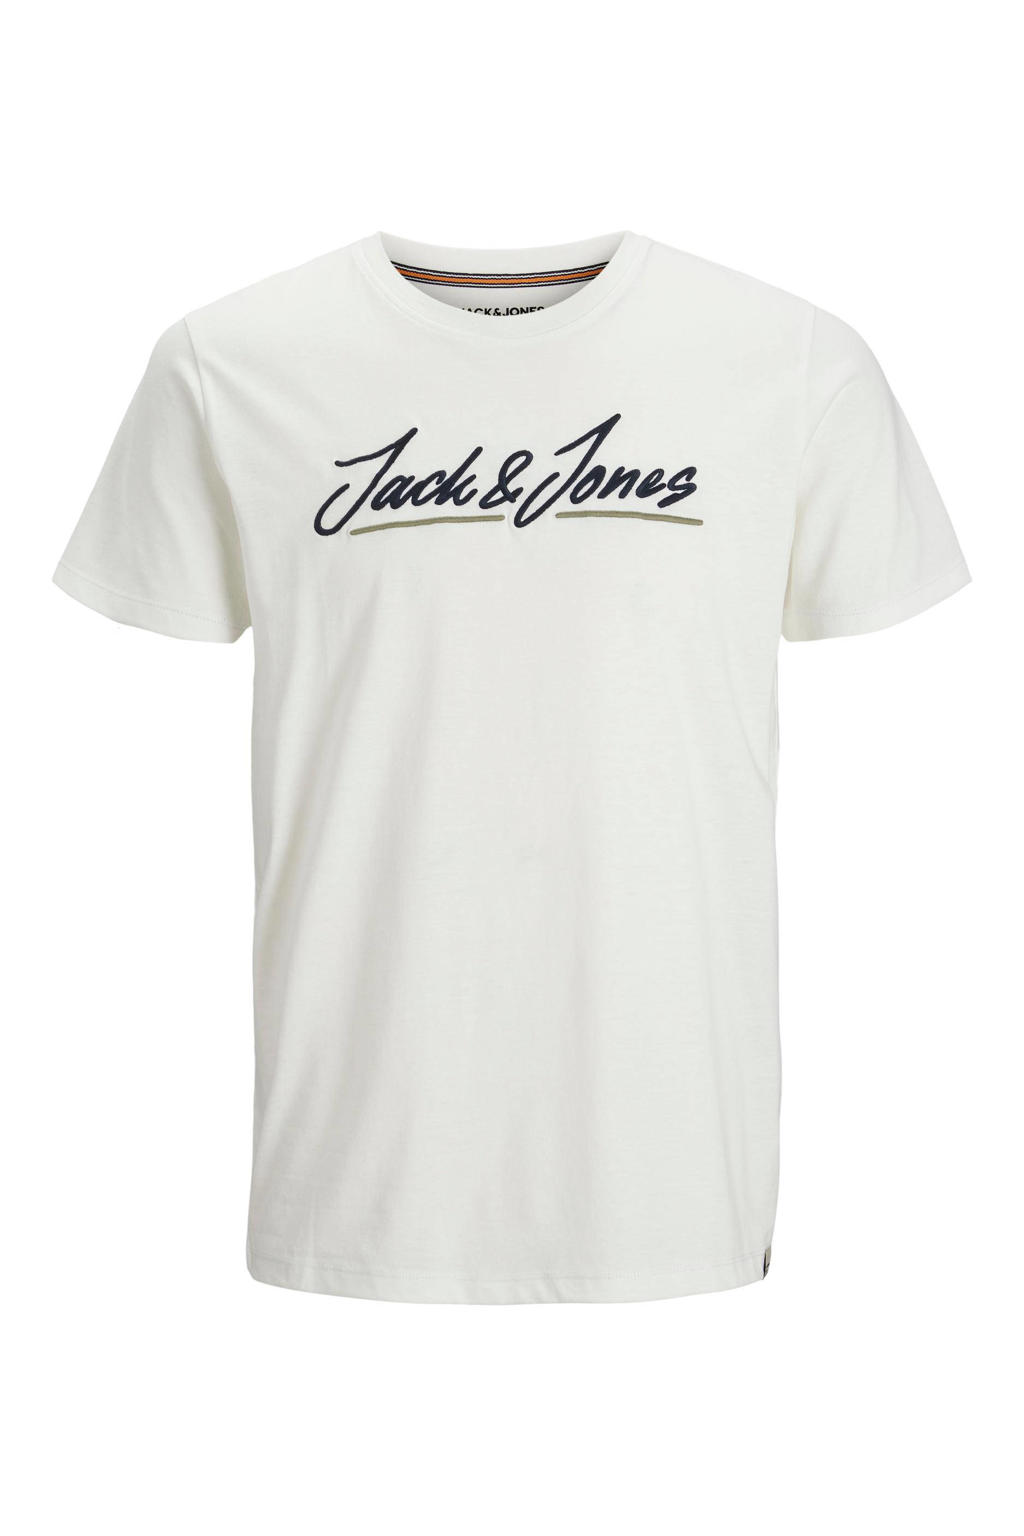 JACK & JONES JUNIOR T-shirt JORTONS met logo wit